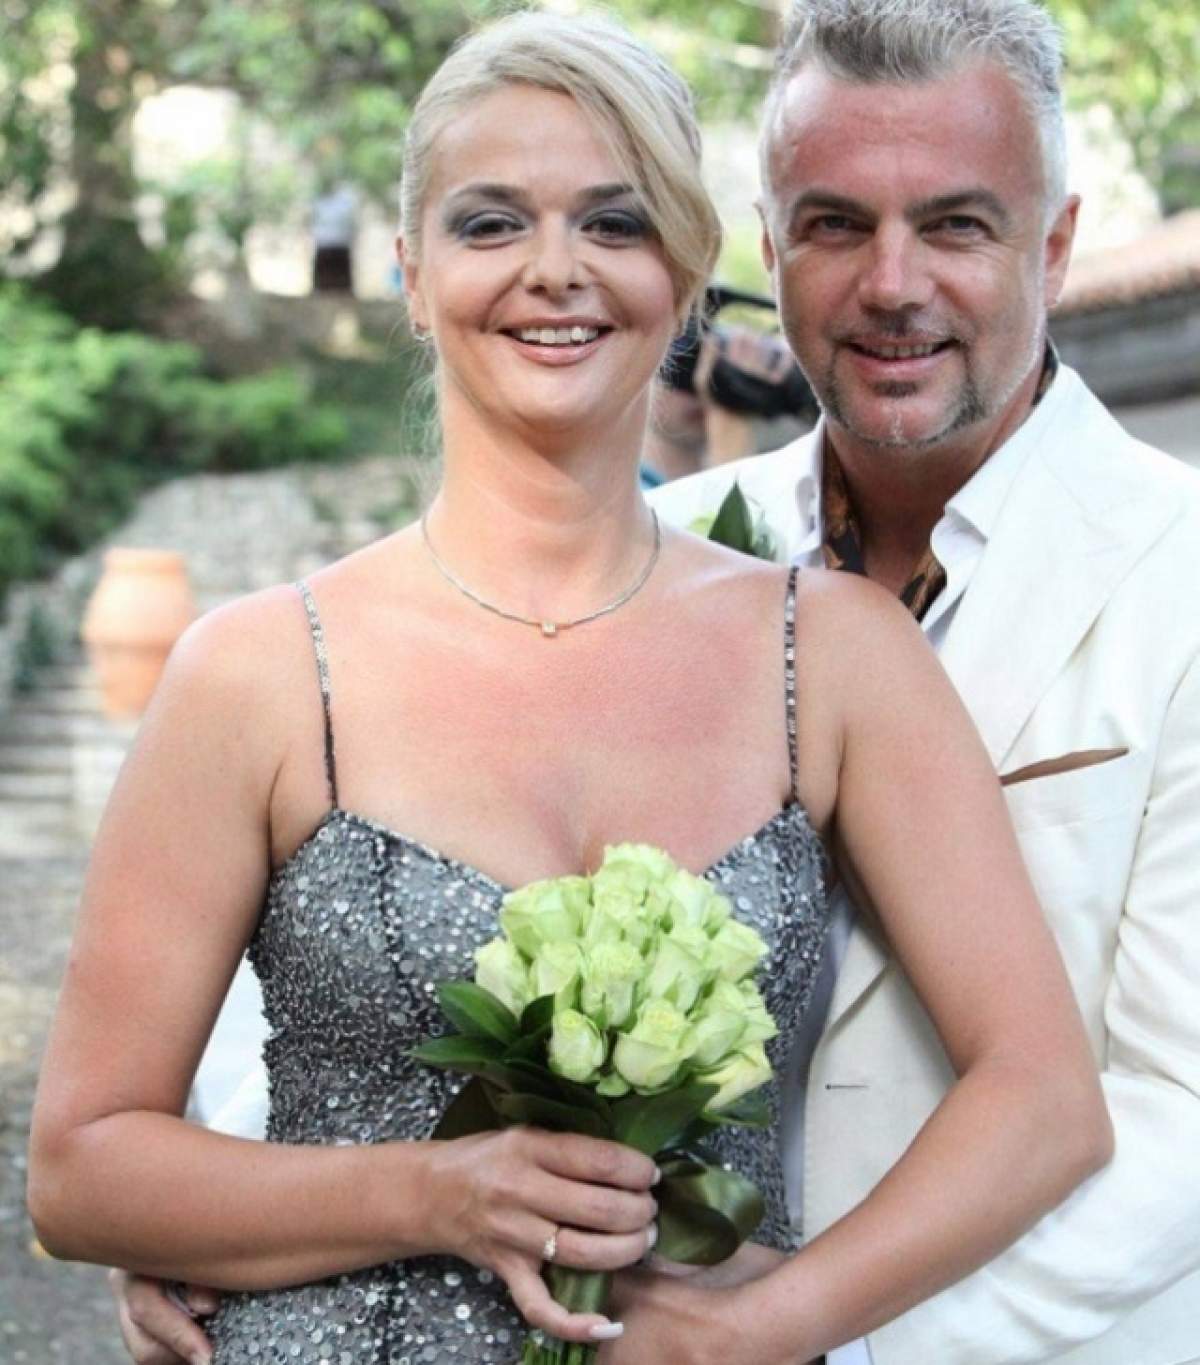 Se căsătoresc? Iuliana Marciuc, despre nunta cu Adrian Enache după 20 de ani de relaţie: "E o sărbătoare"